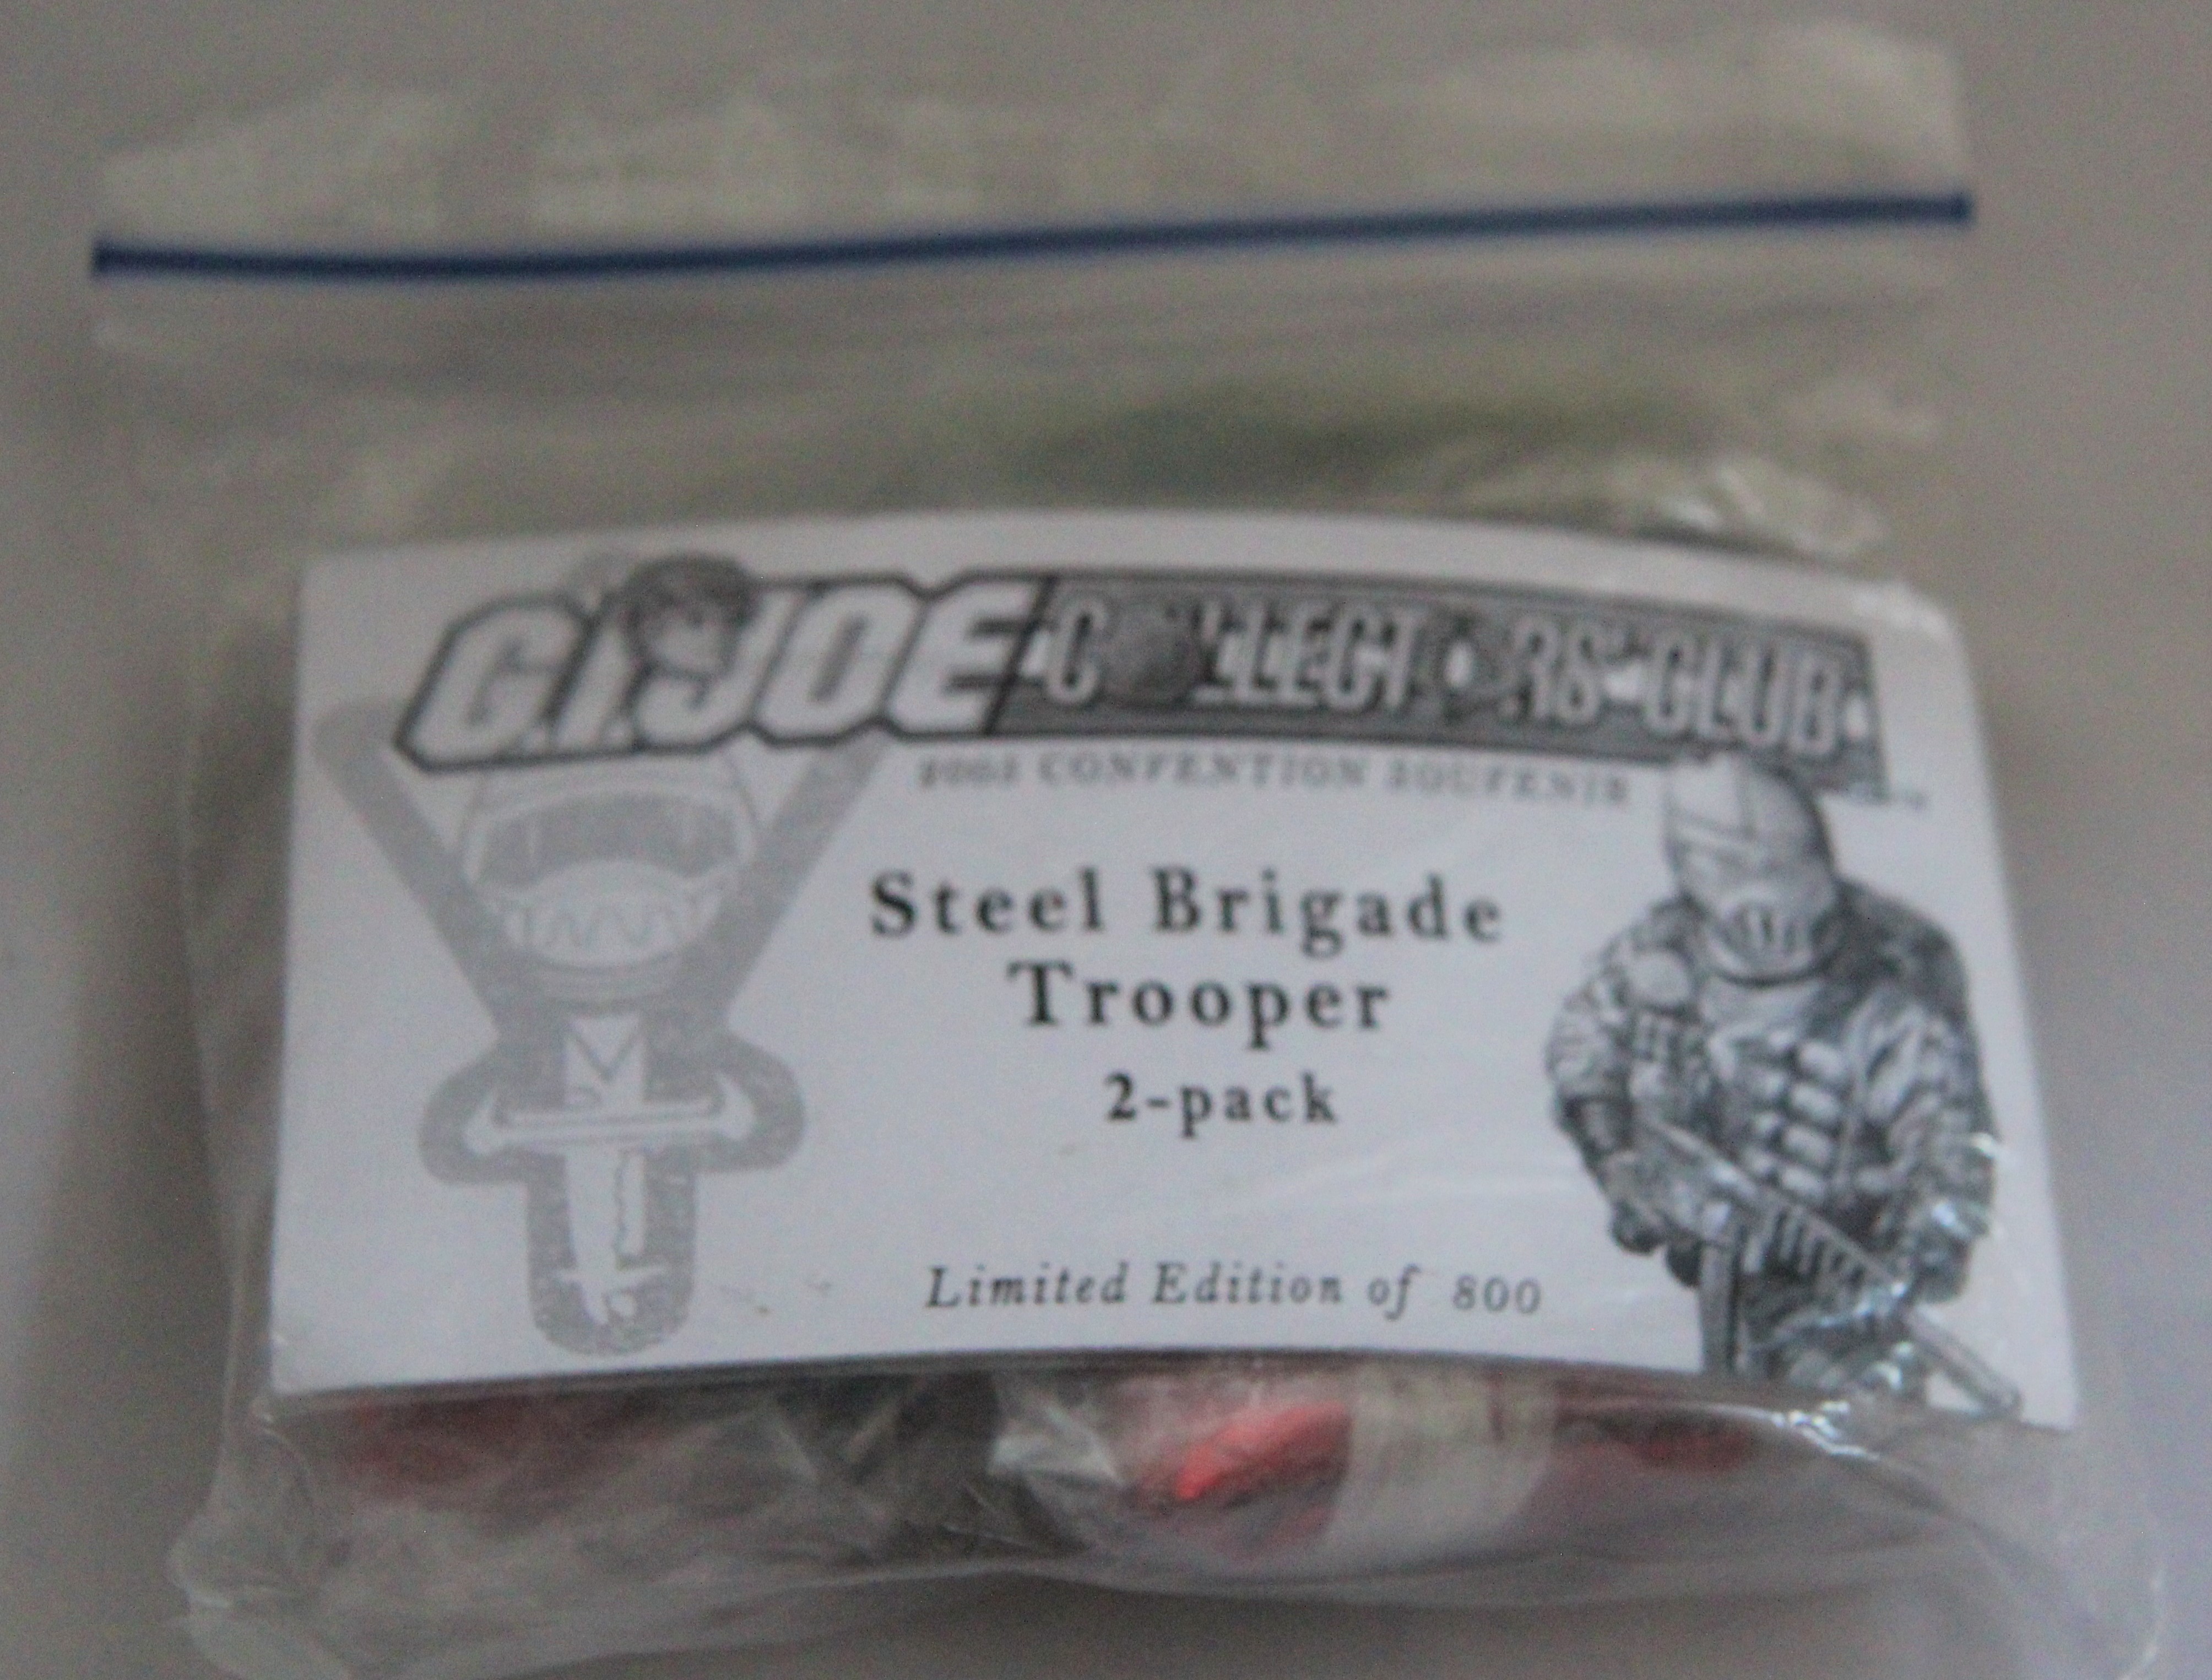 2005 Steel Brigade Trooper 2-pack